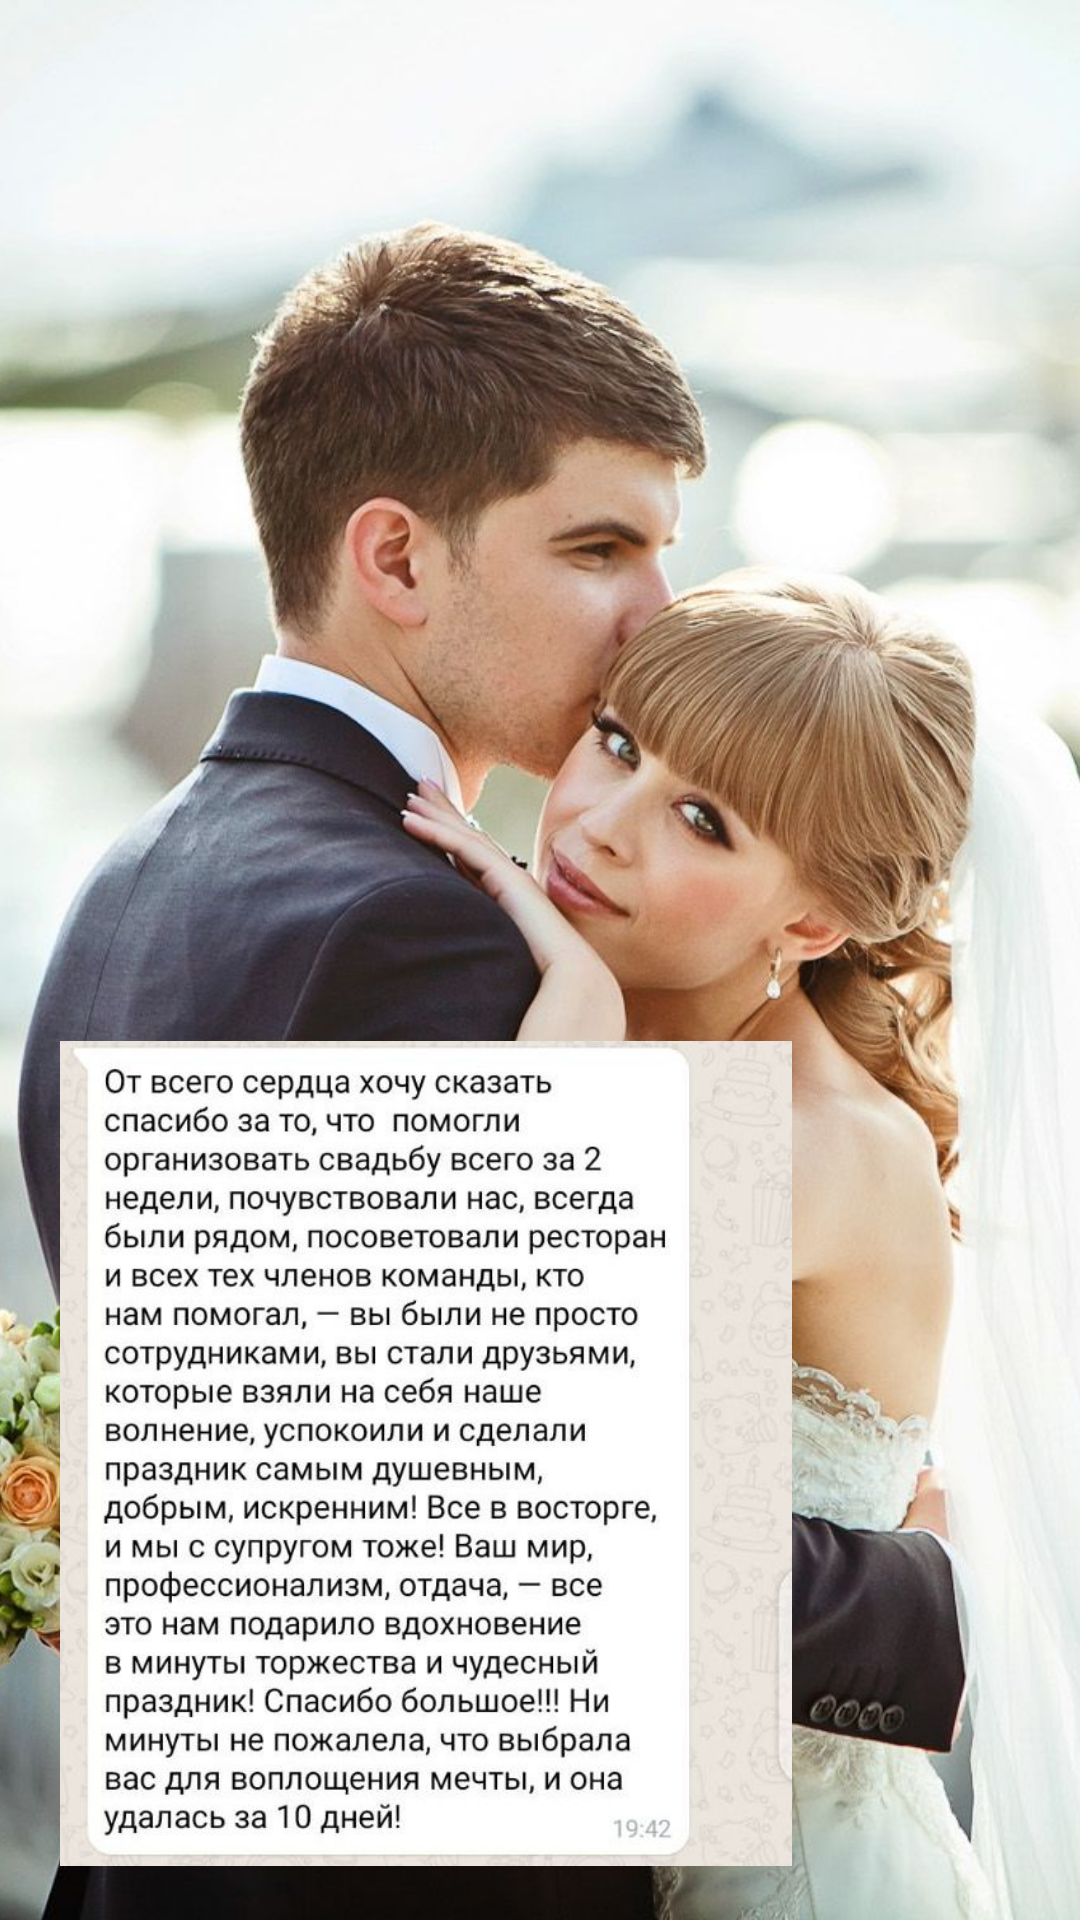 Организация свадьбы в Волгограде
от компании Pandaevent